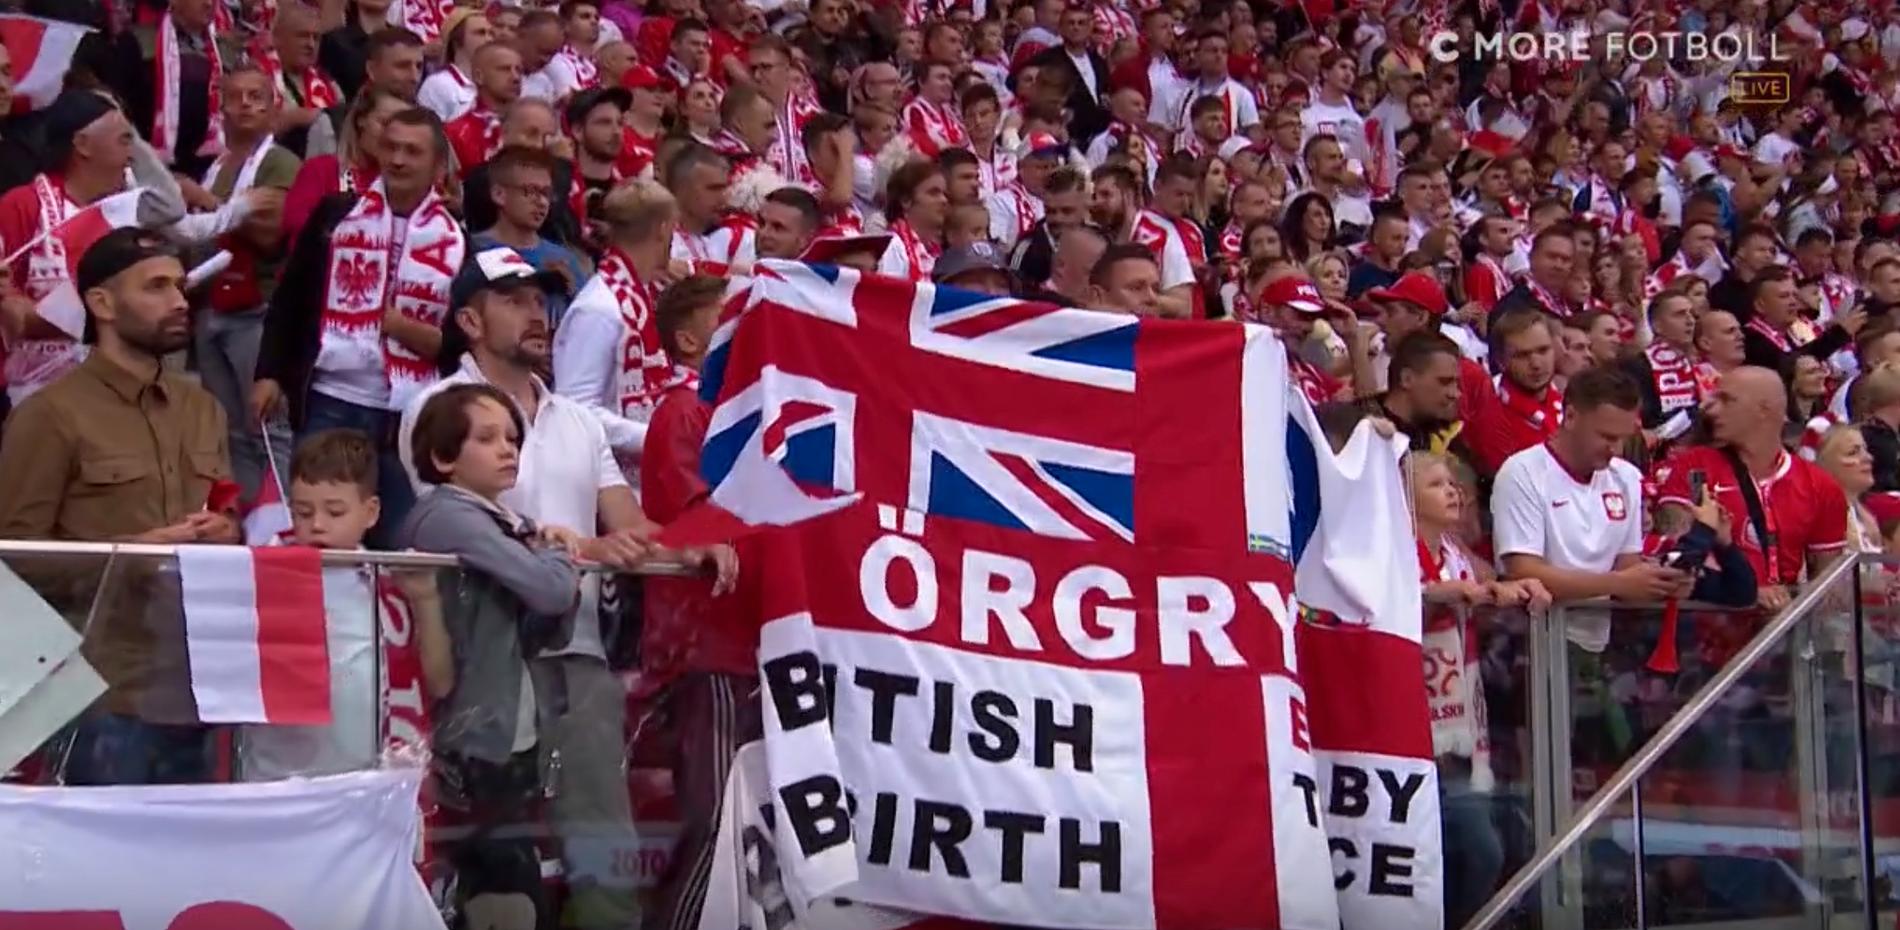 Den engelska flaggan med Örgryte i det röda korset dök upp i publikhavet under matchen Polen – England.